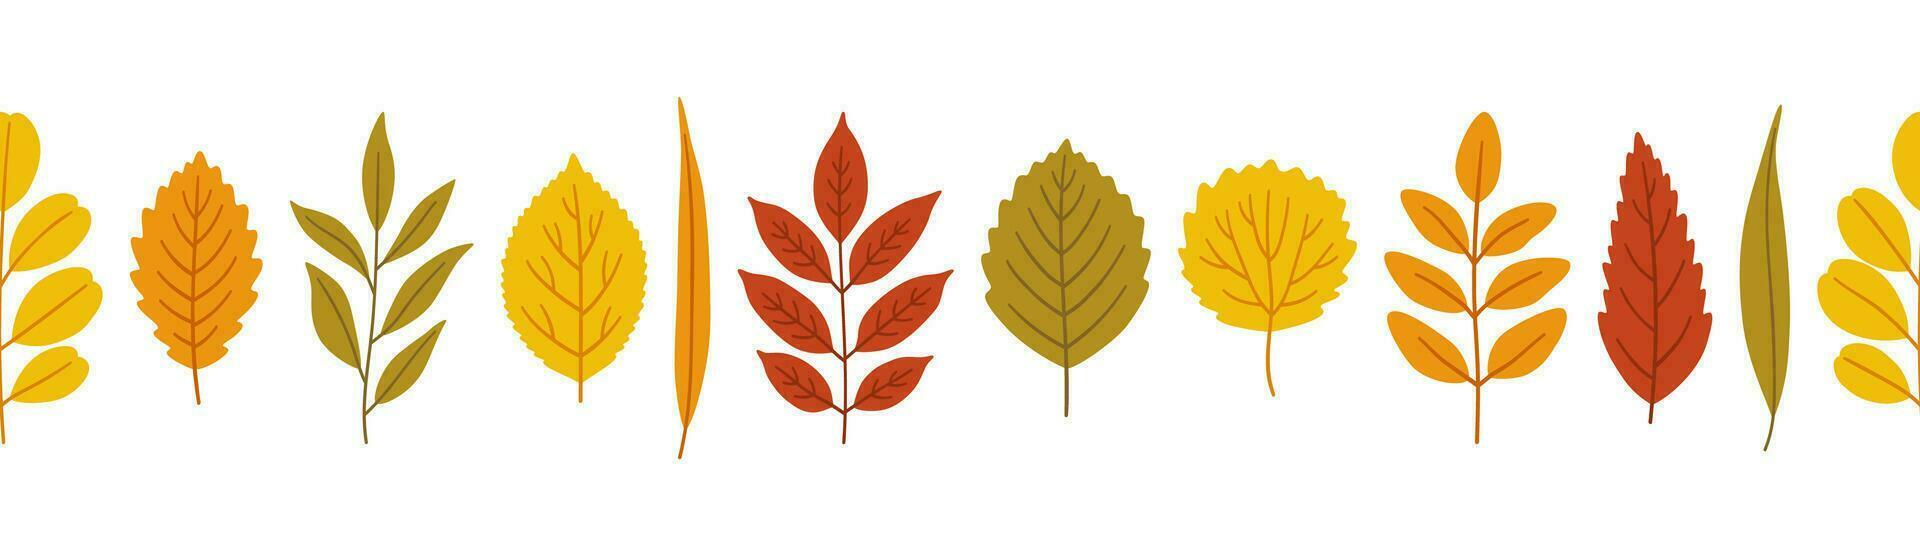 l'automne feuilles arrière-plan, bannière modèle, vecteur illustration.